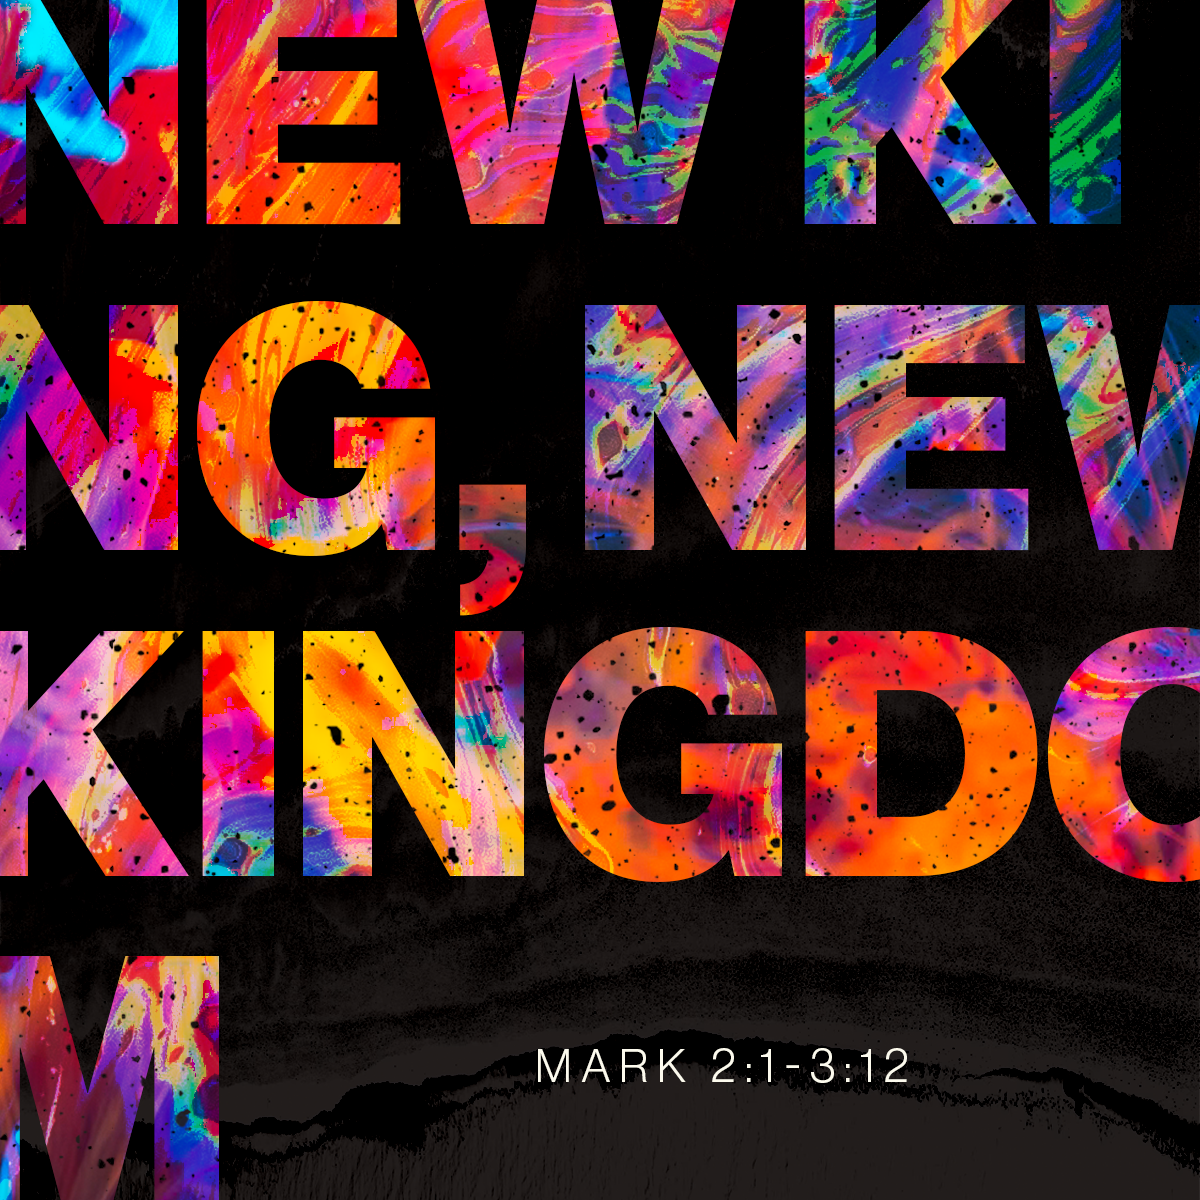 New King, New Kingdom (Mark 2:1-3:12)